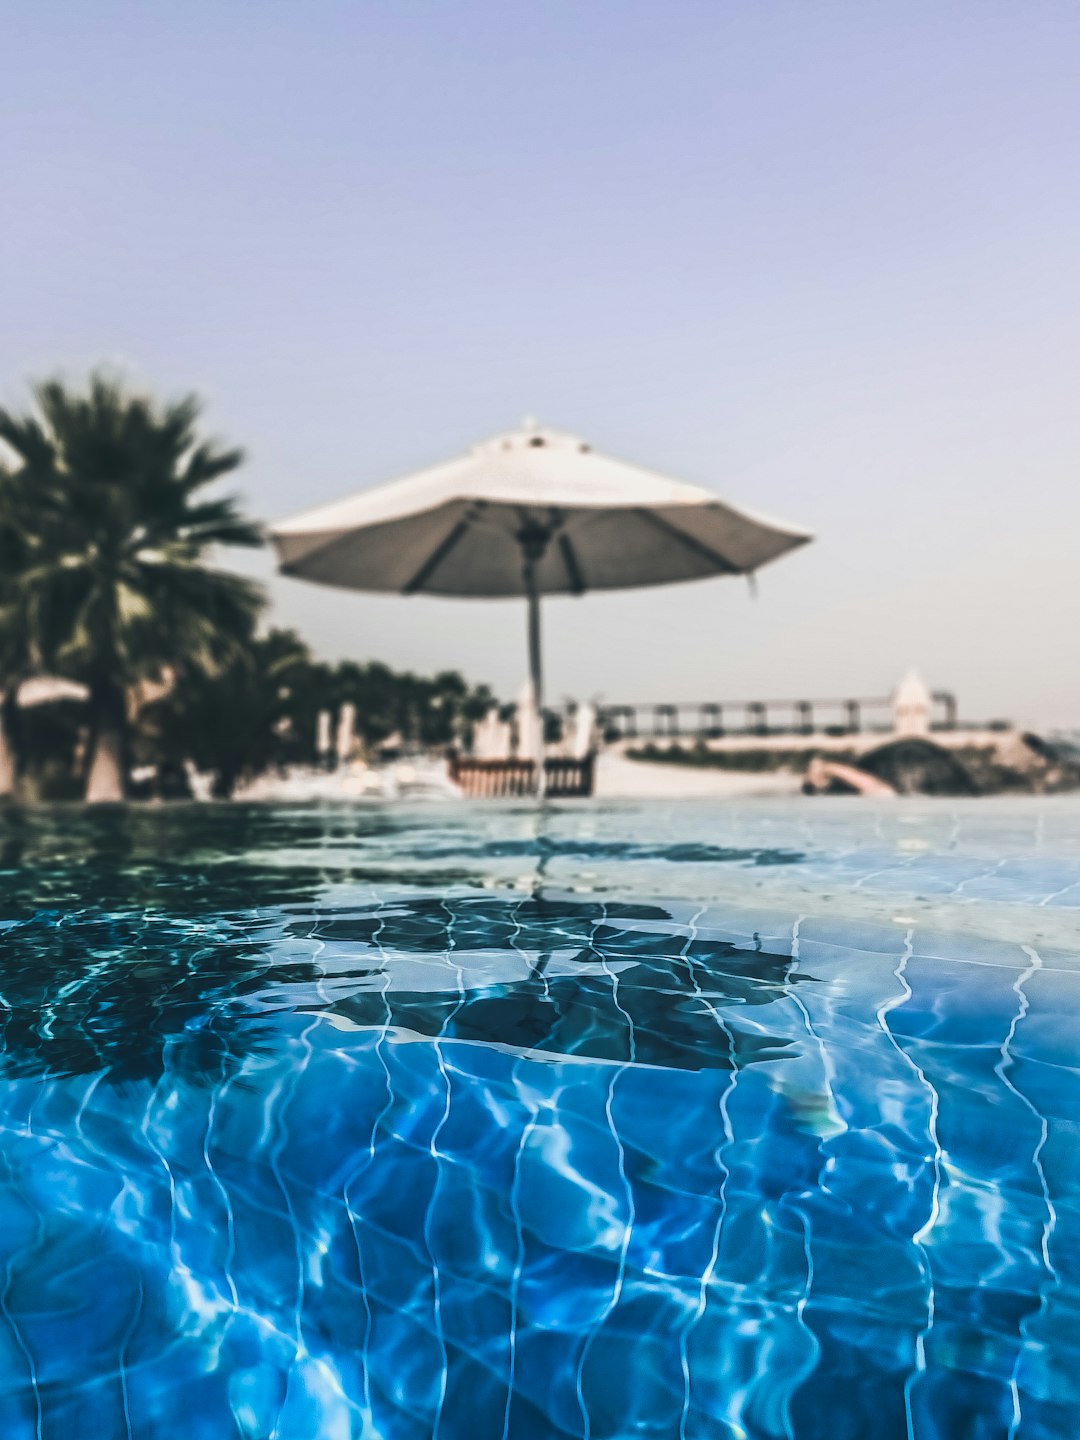 Resort photo spot Ras Al-Khaimah - Ras al Khaimah - United Arab Emirates Dubai